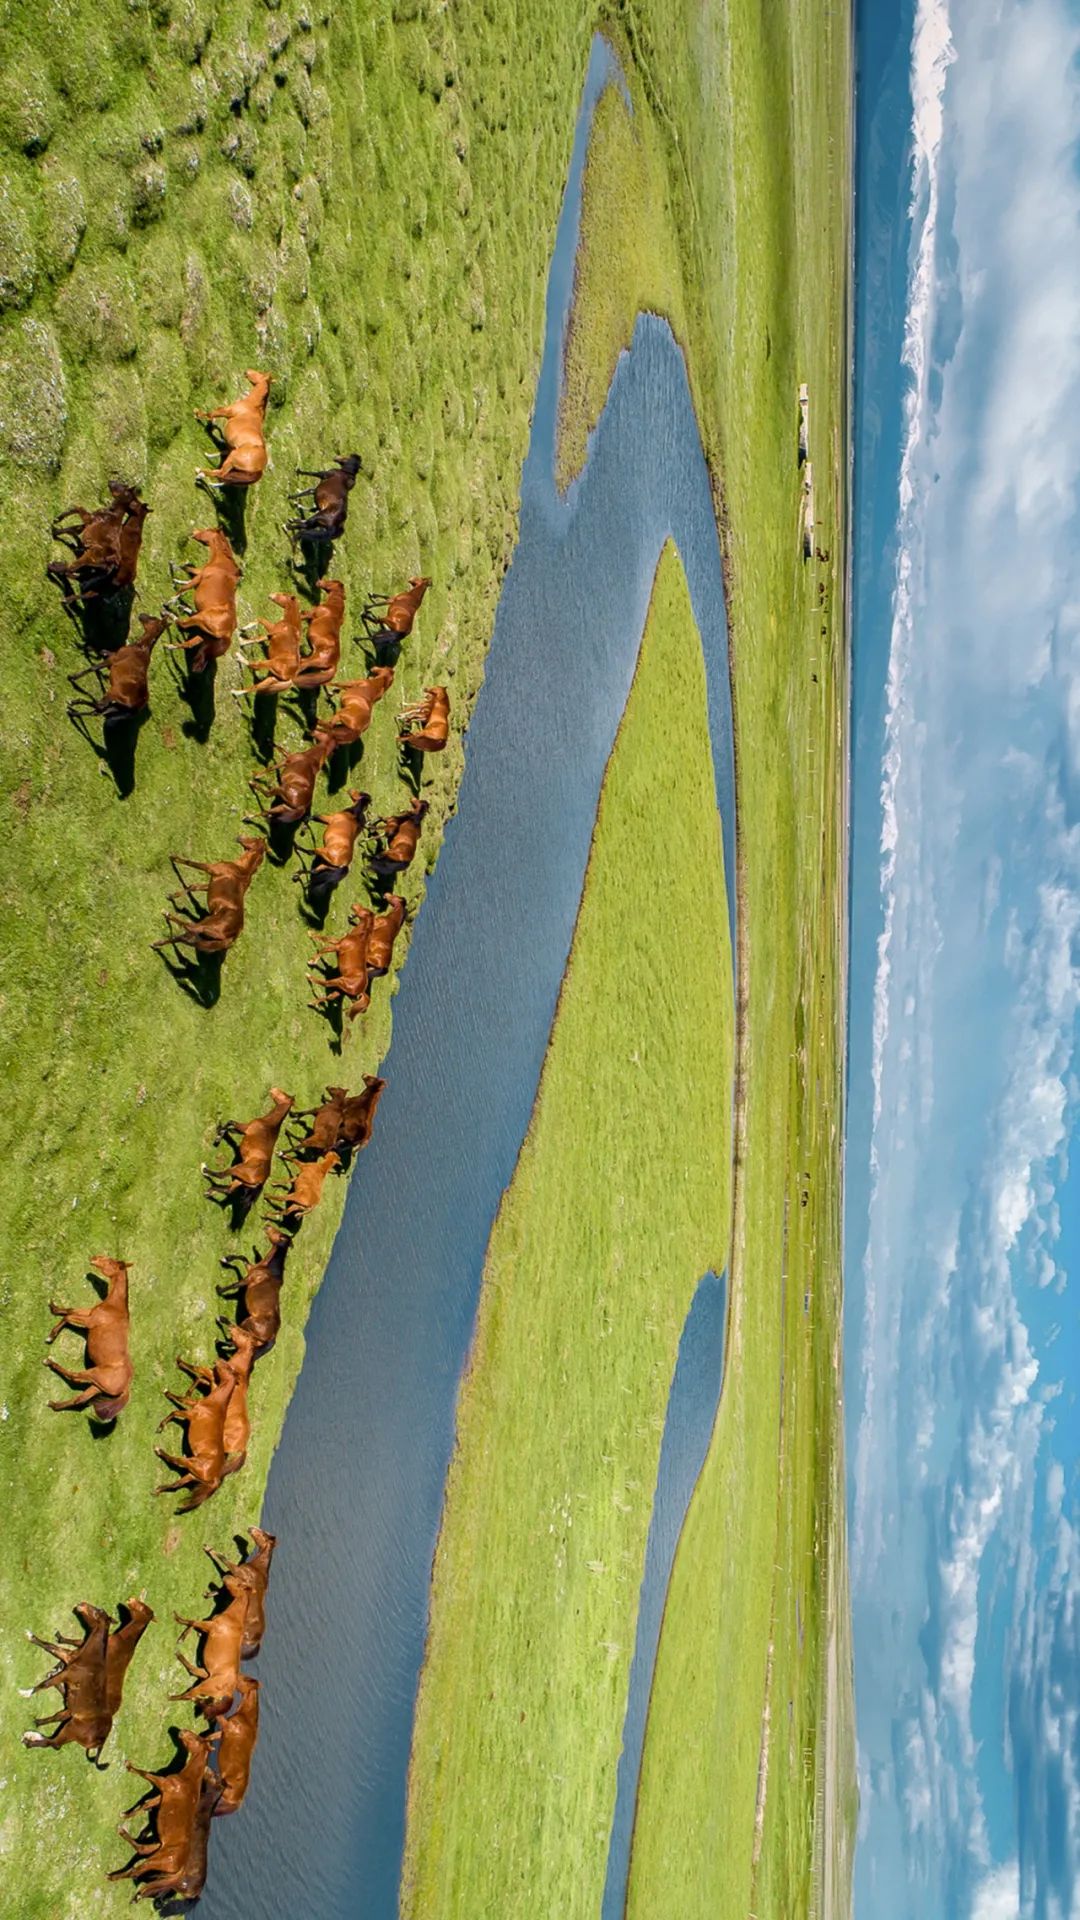  群马奔腾在河畔，伊犁的昭苏是著名的“天马之乡”，盛产骏马。摄影/赖宇宁